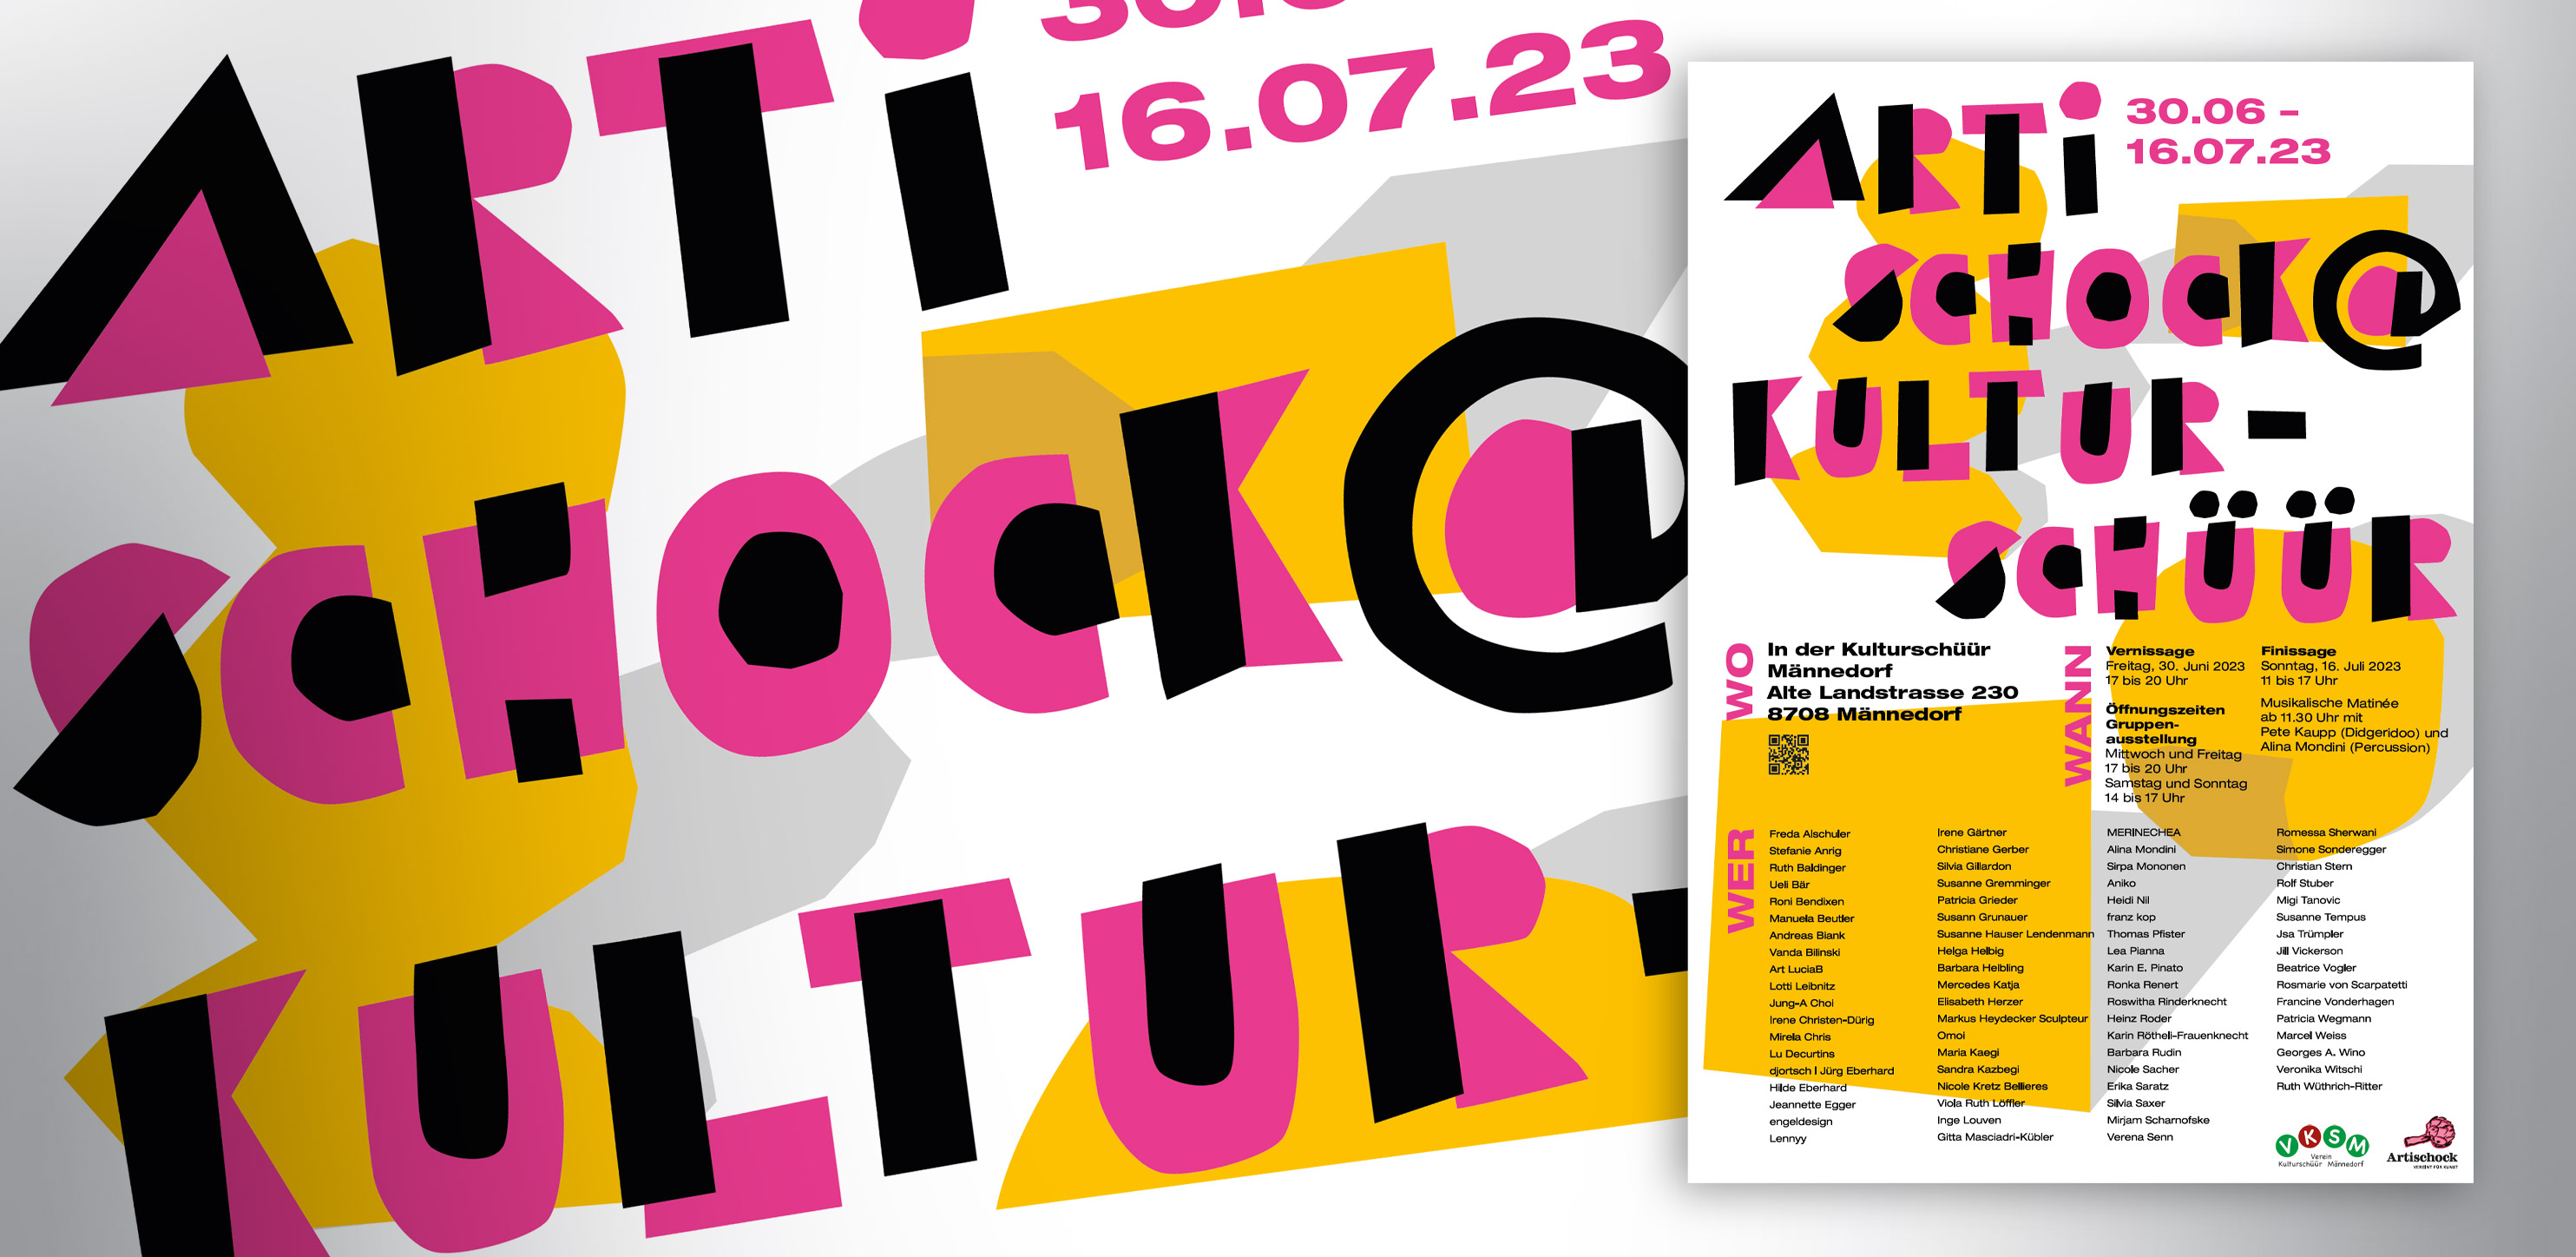 Plakat für Artischock - Atelier Leuthold, Visuelle Kommunikation, Grafik Design, Zürich